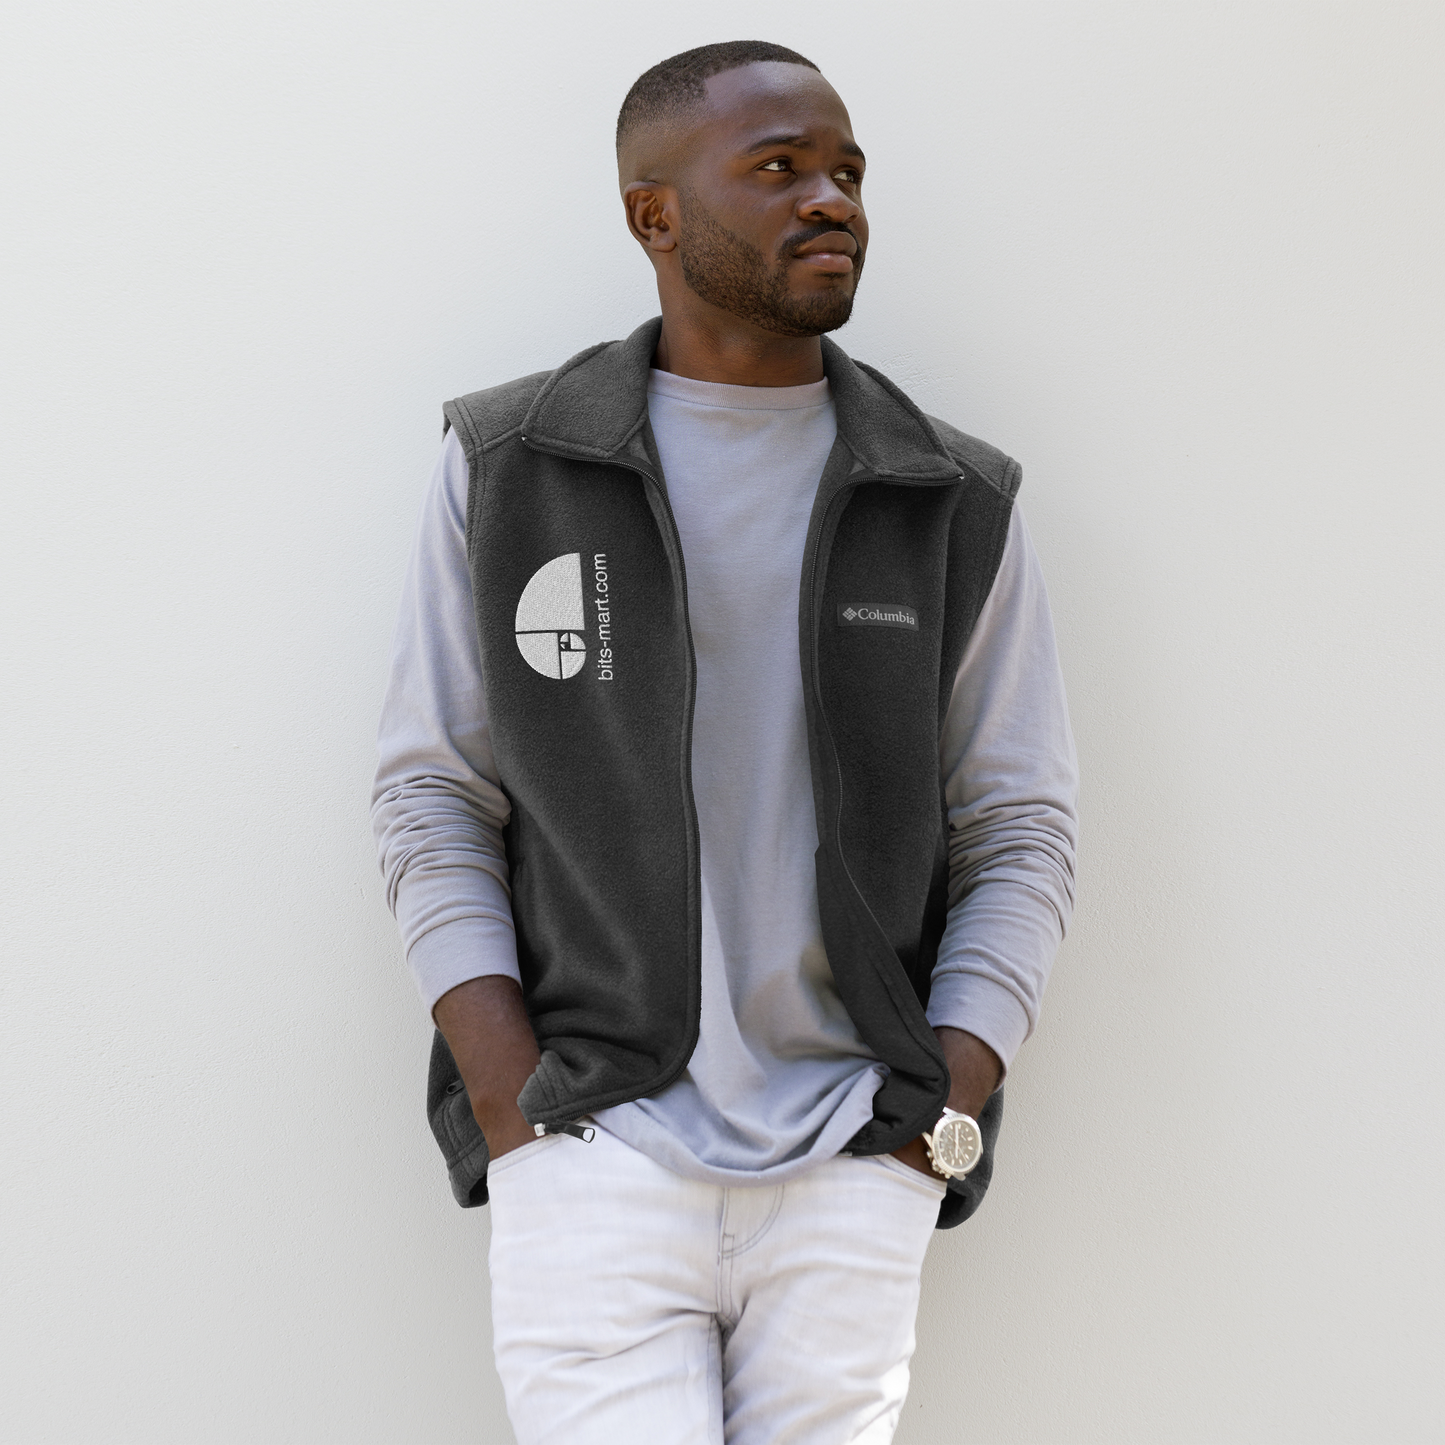 Men’s Columbia fleece vest — Grey